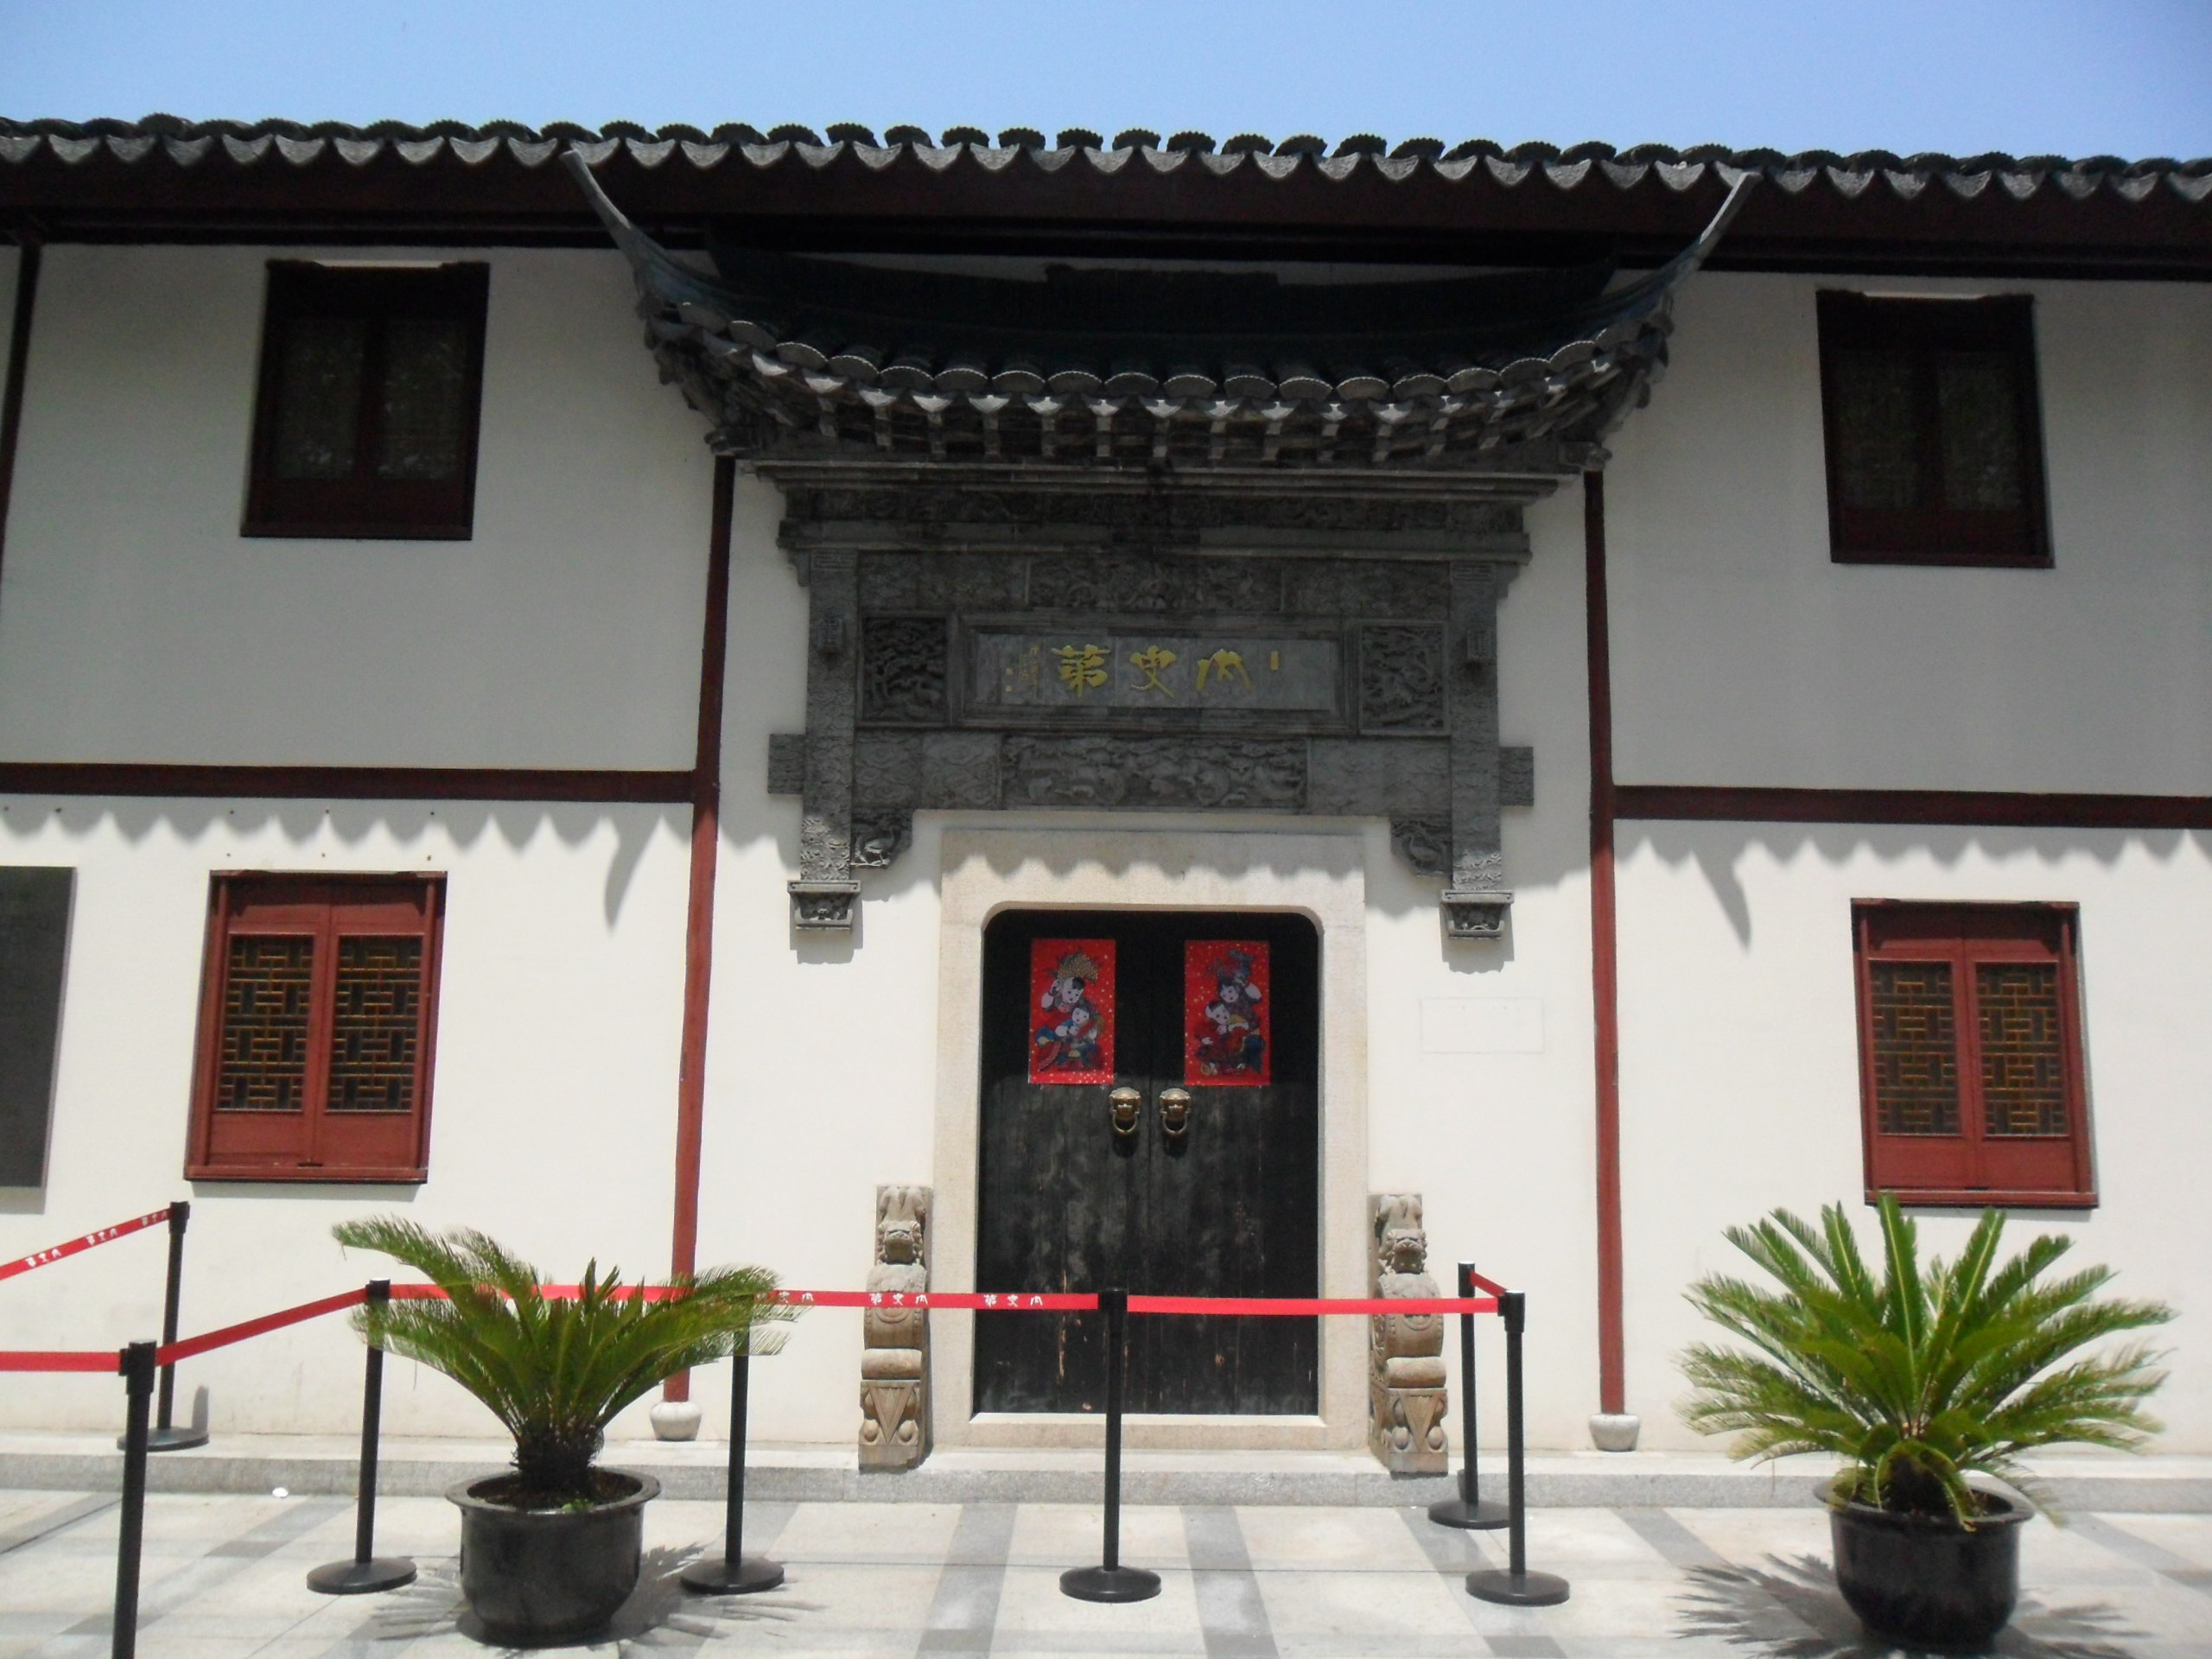 内史第,是一座典型的江南官宦宅第,又是一座国内罕见的名人集聚的江南